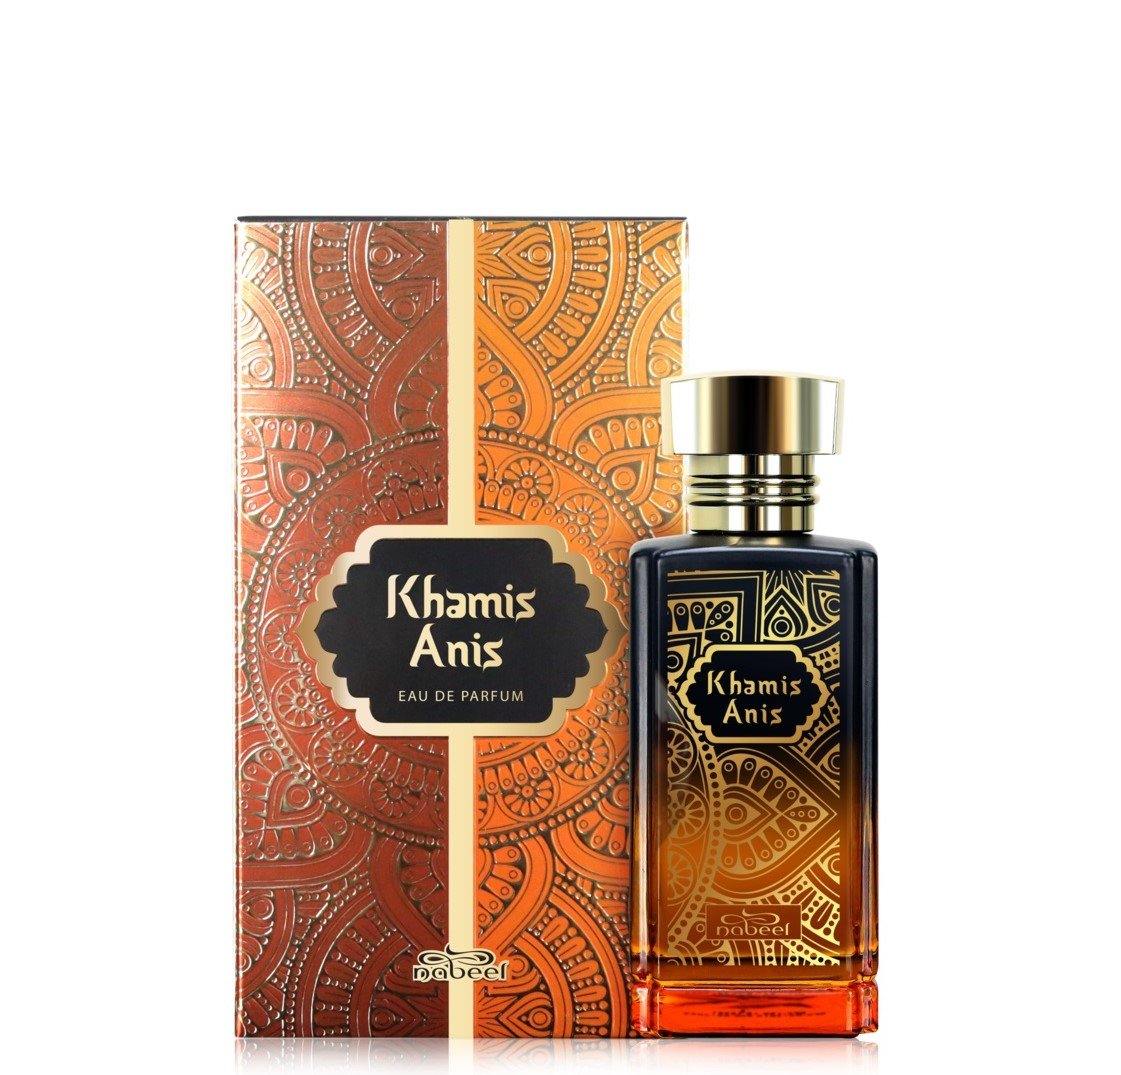 100 ml Eau de Parfum Khamis Anis cu Arome Oriental-Fructate pentru Femei și Bărbați - Bijuterii TV